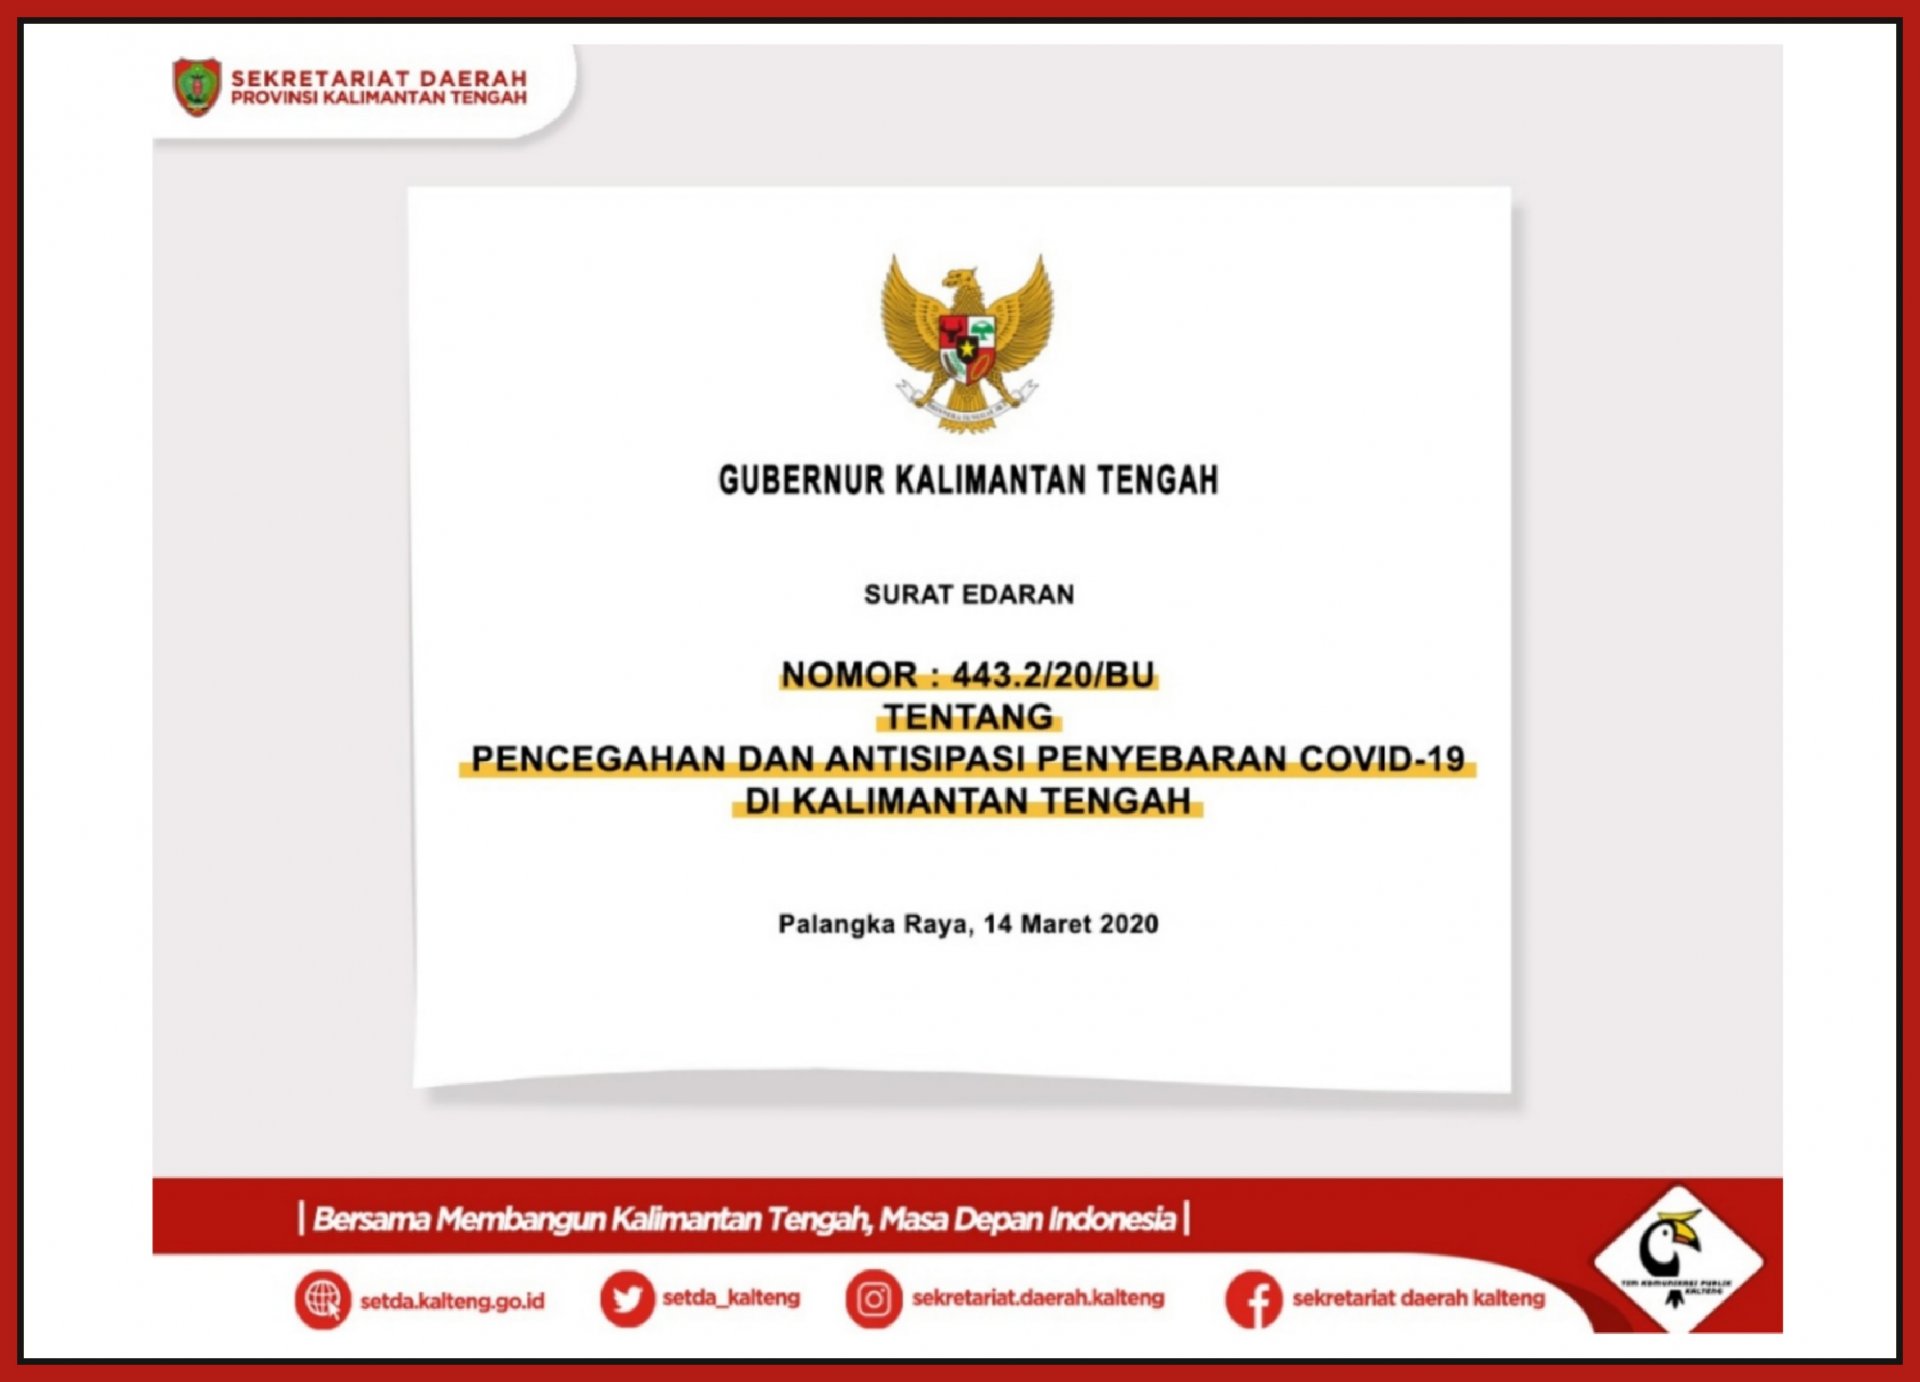 Surat Edaran Gubernur Kalimantan Tengah Nomor 443.2/20/BU Tentang Pencegahan dan Antisipasi Penyebaran COVID-19 di Kalimantan Tengah